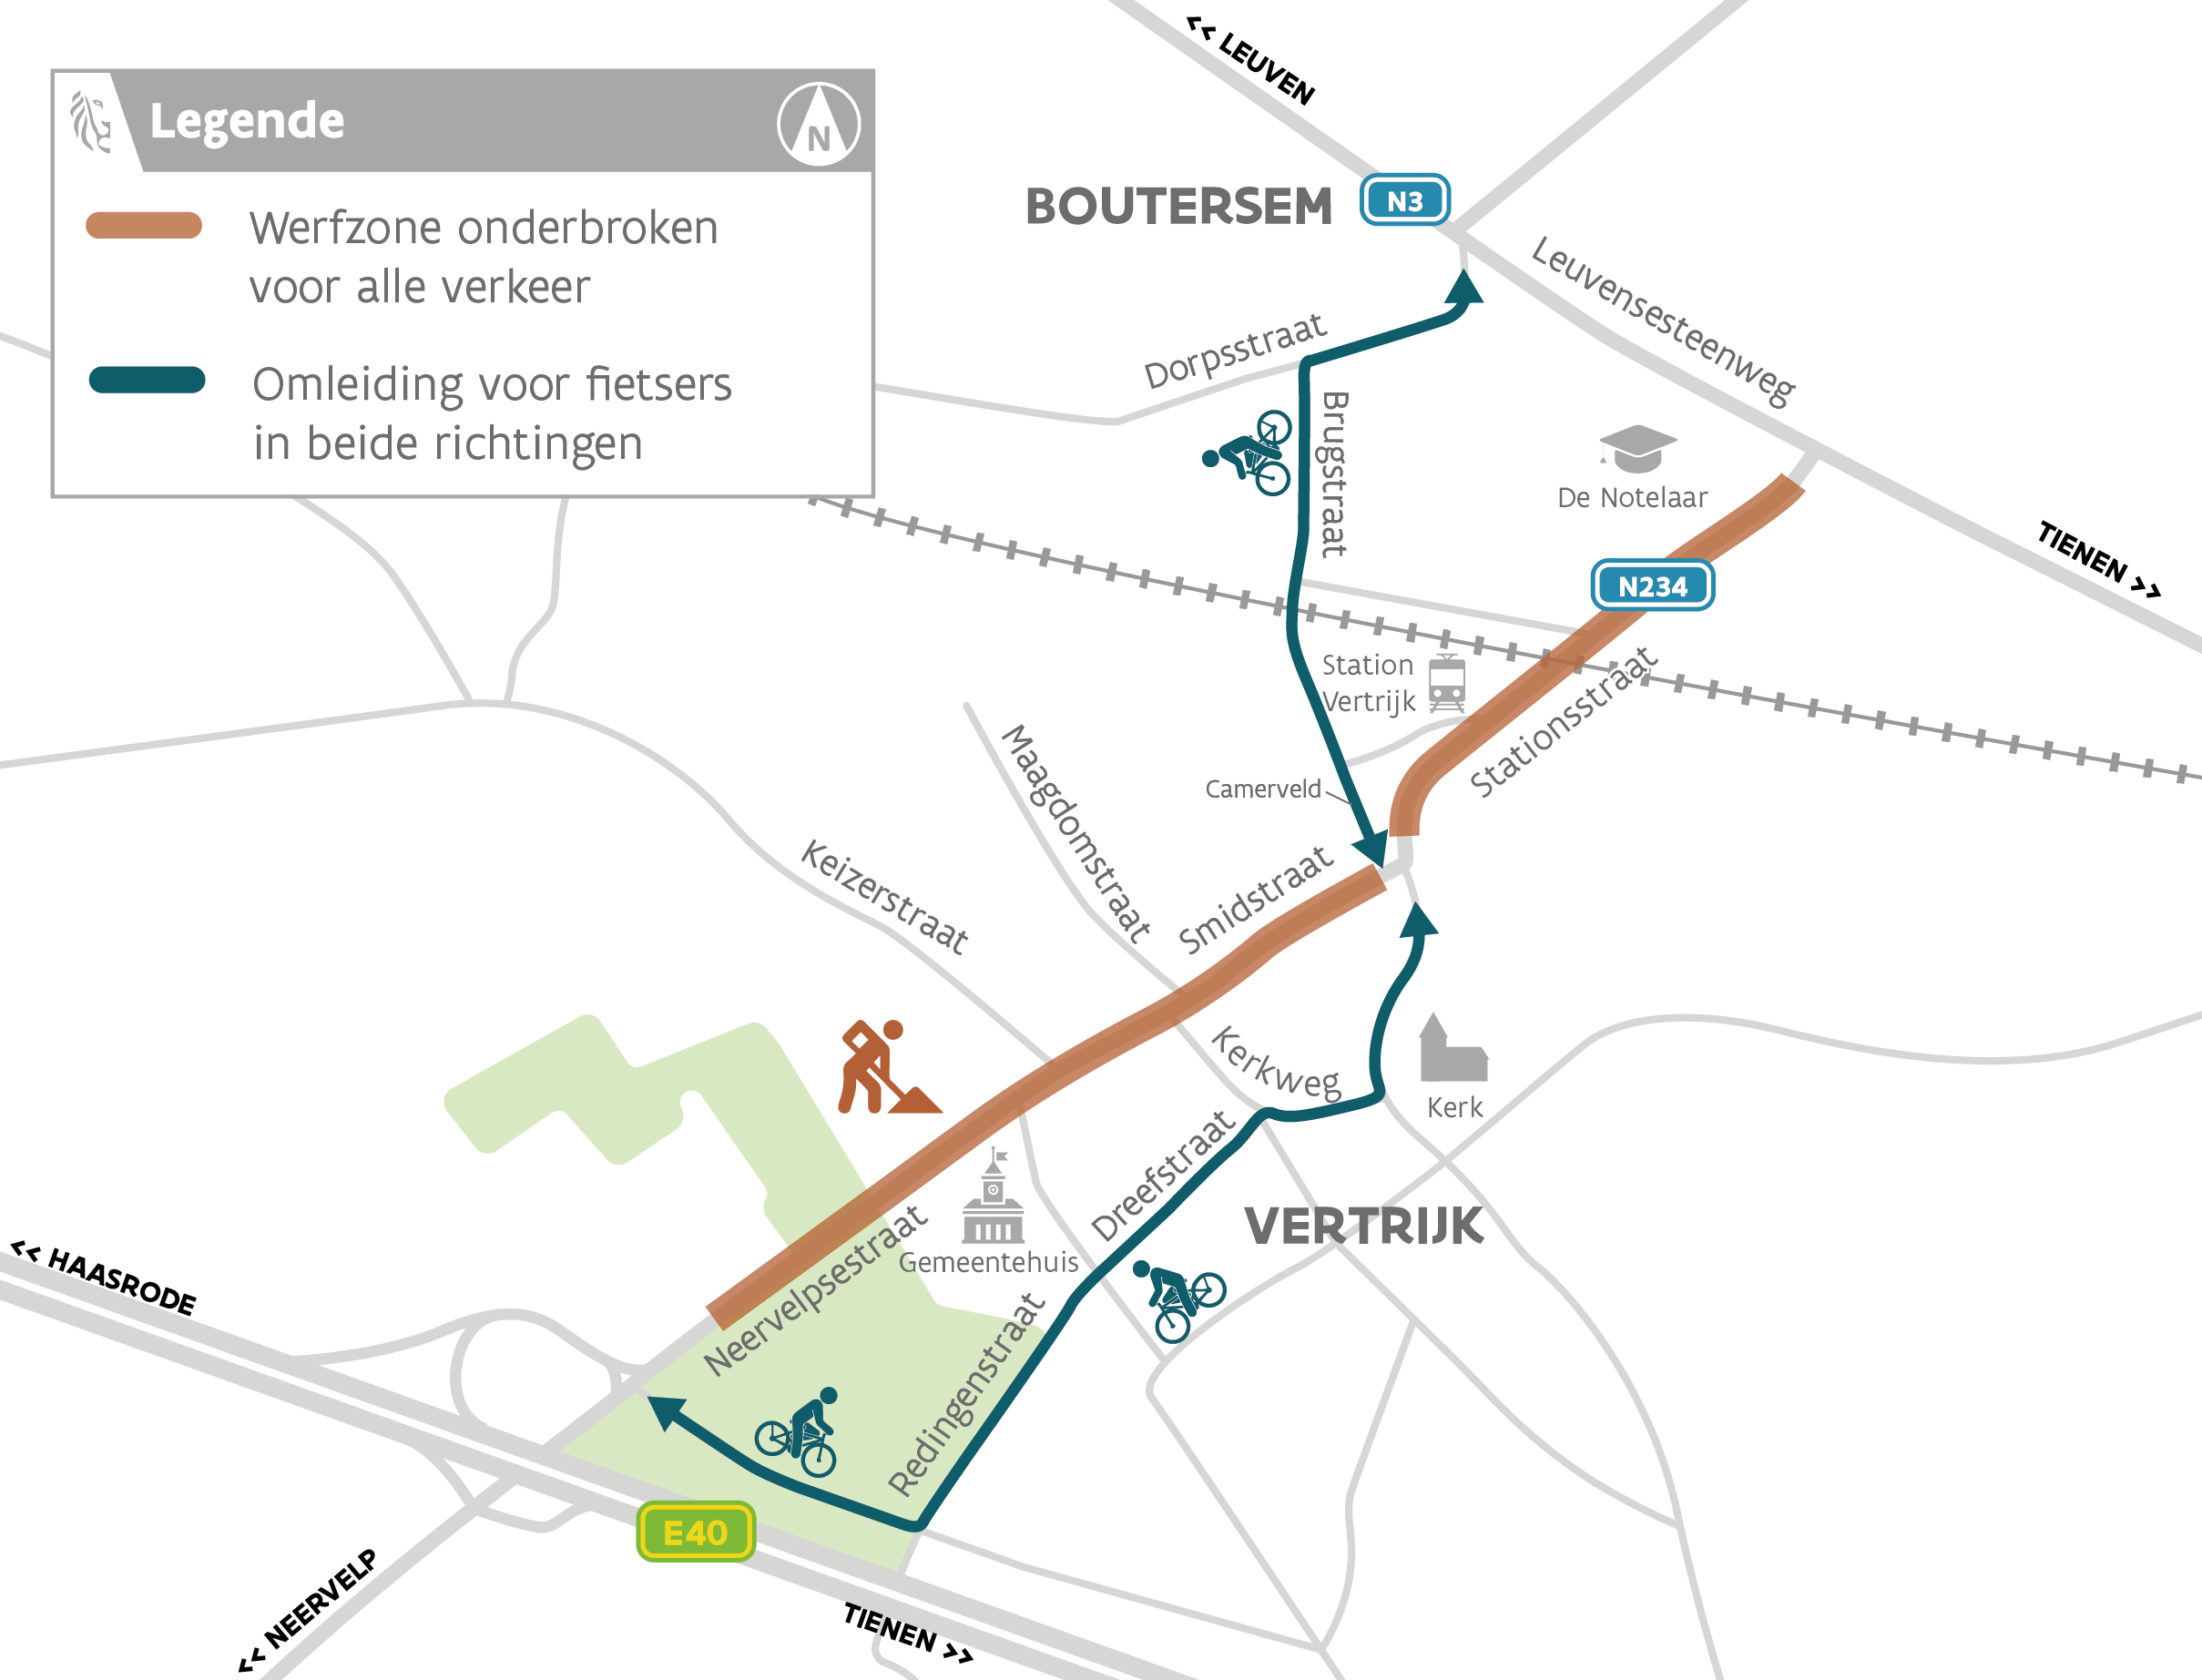 Werfzones voor de maand augustus en fietsomleidingen in kaart gebracht voor de gewestweg N234